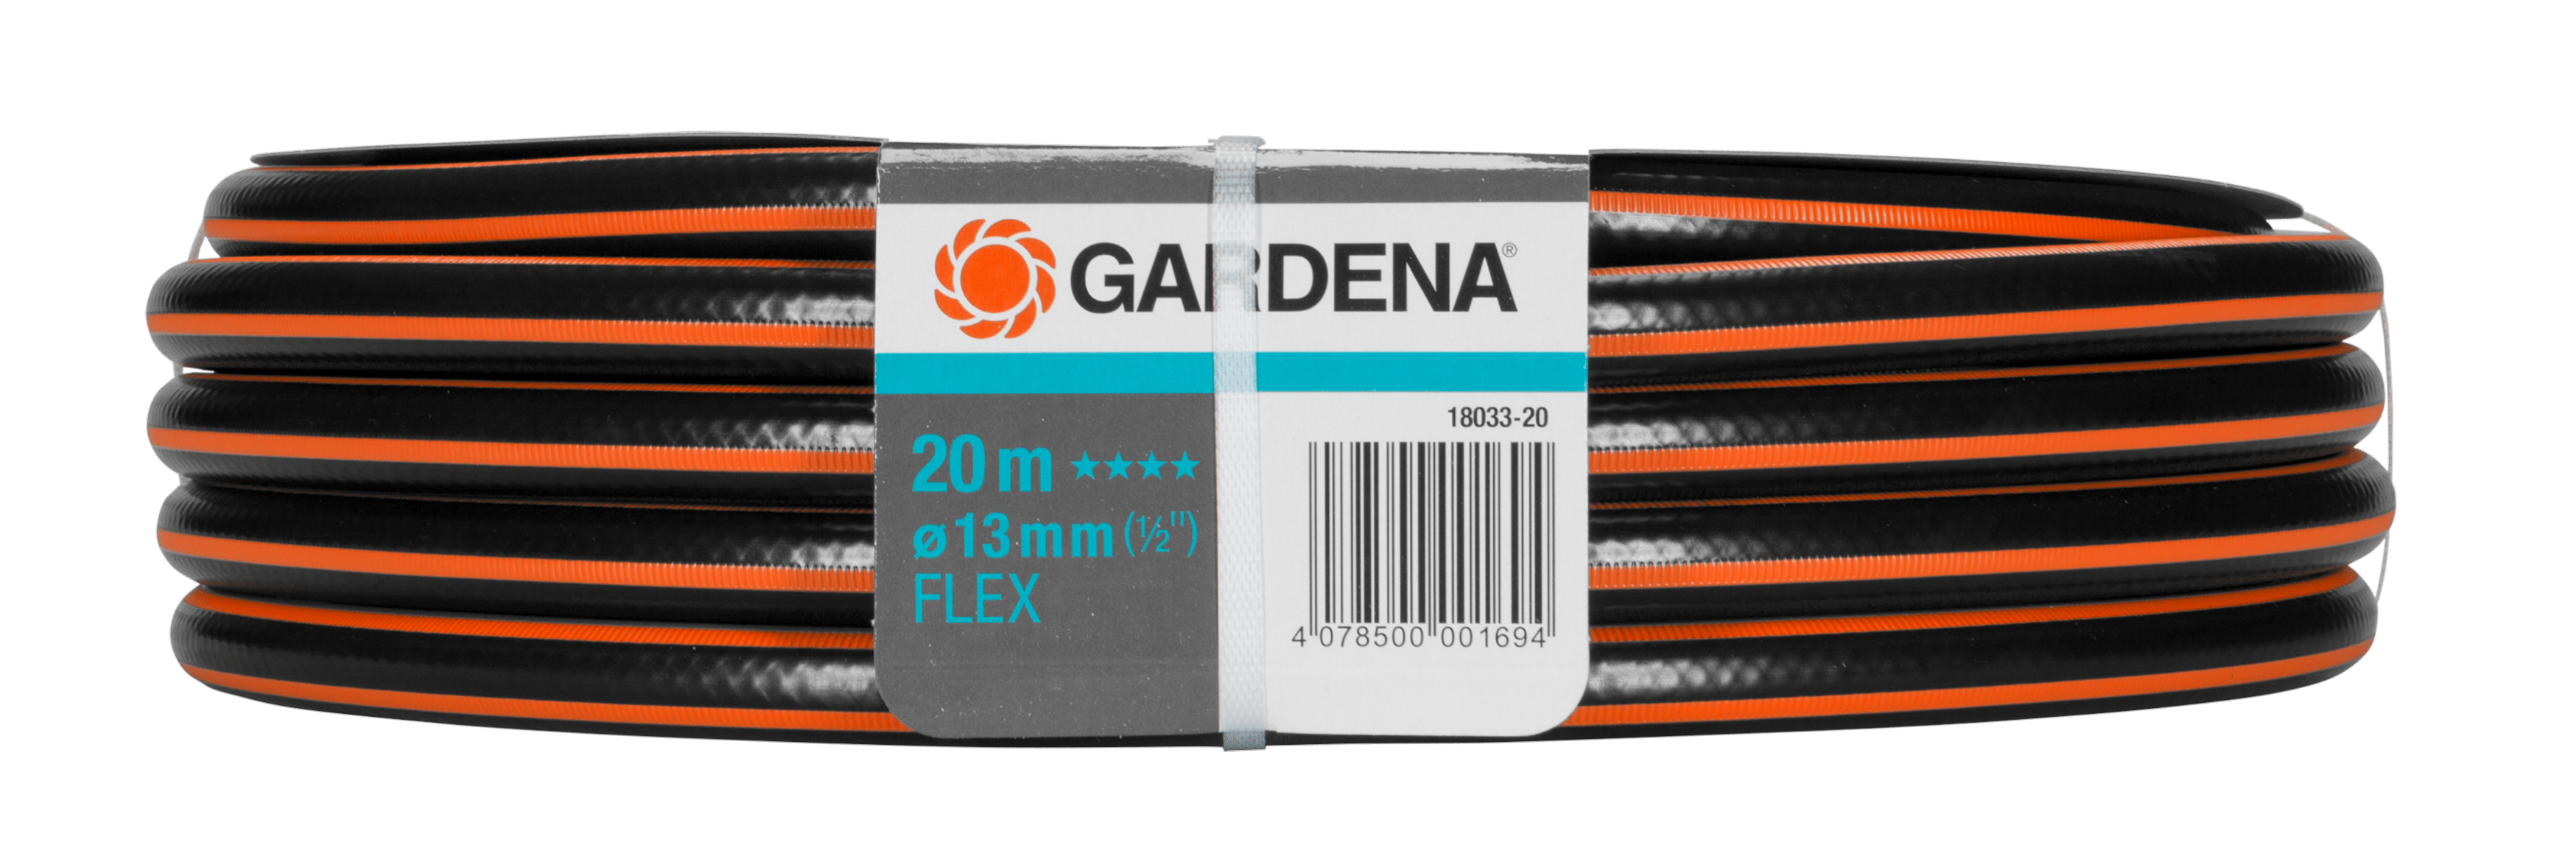 Gardena Comfort Flex Schlauch 9x9 13mm 20m